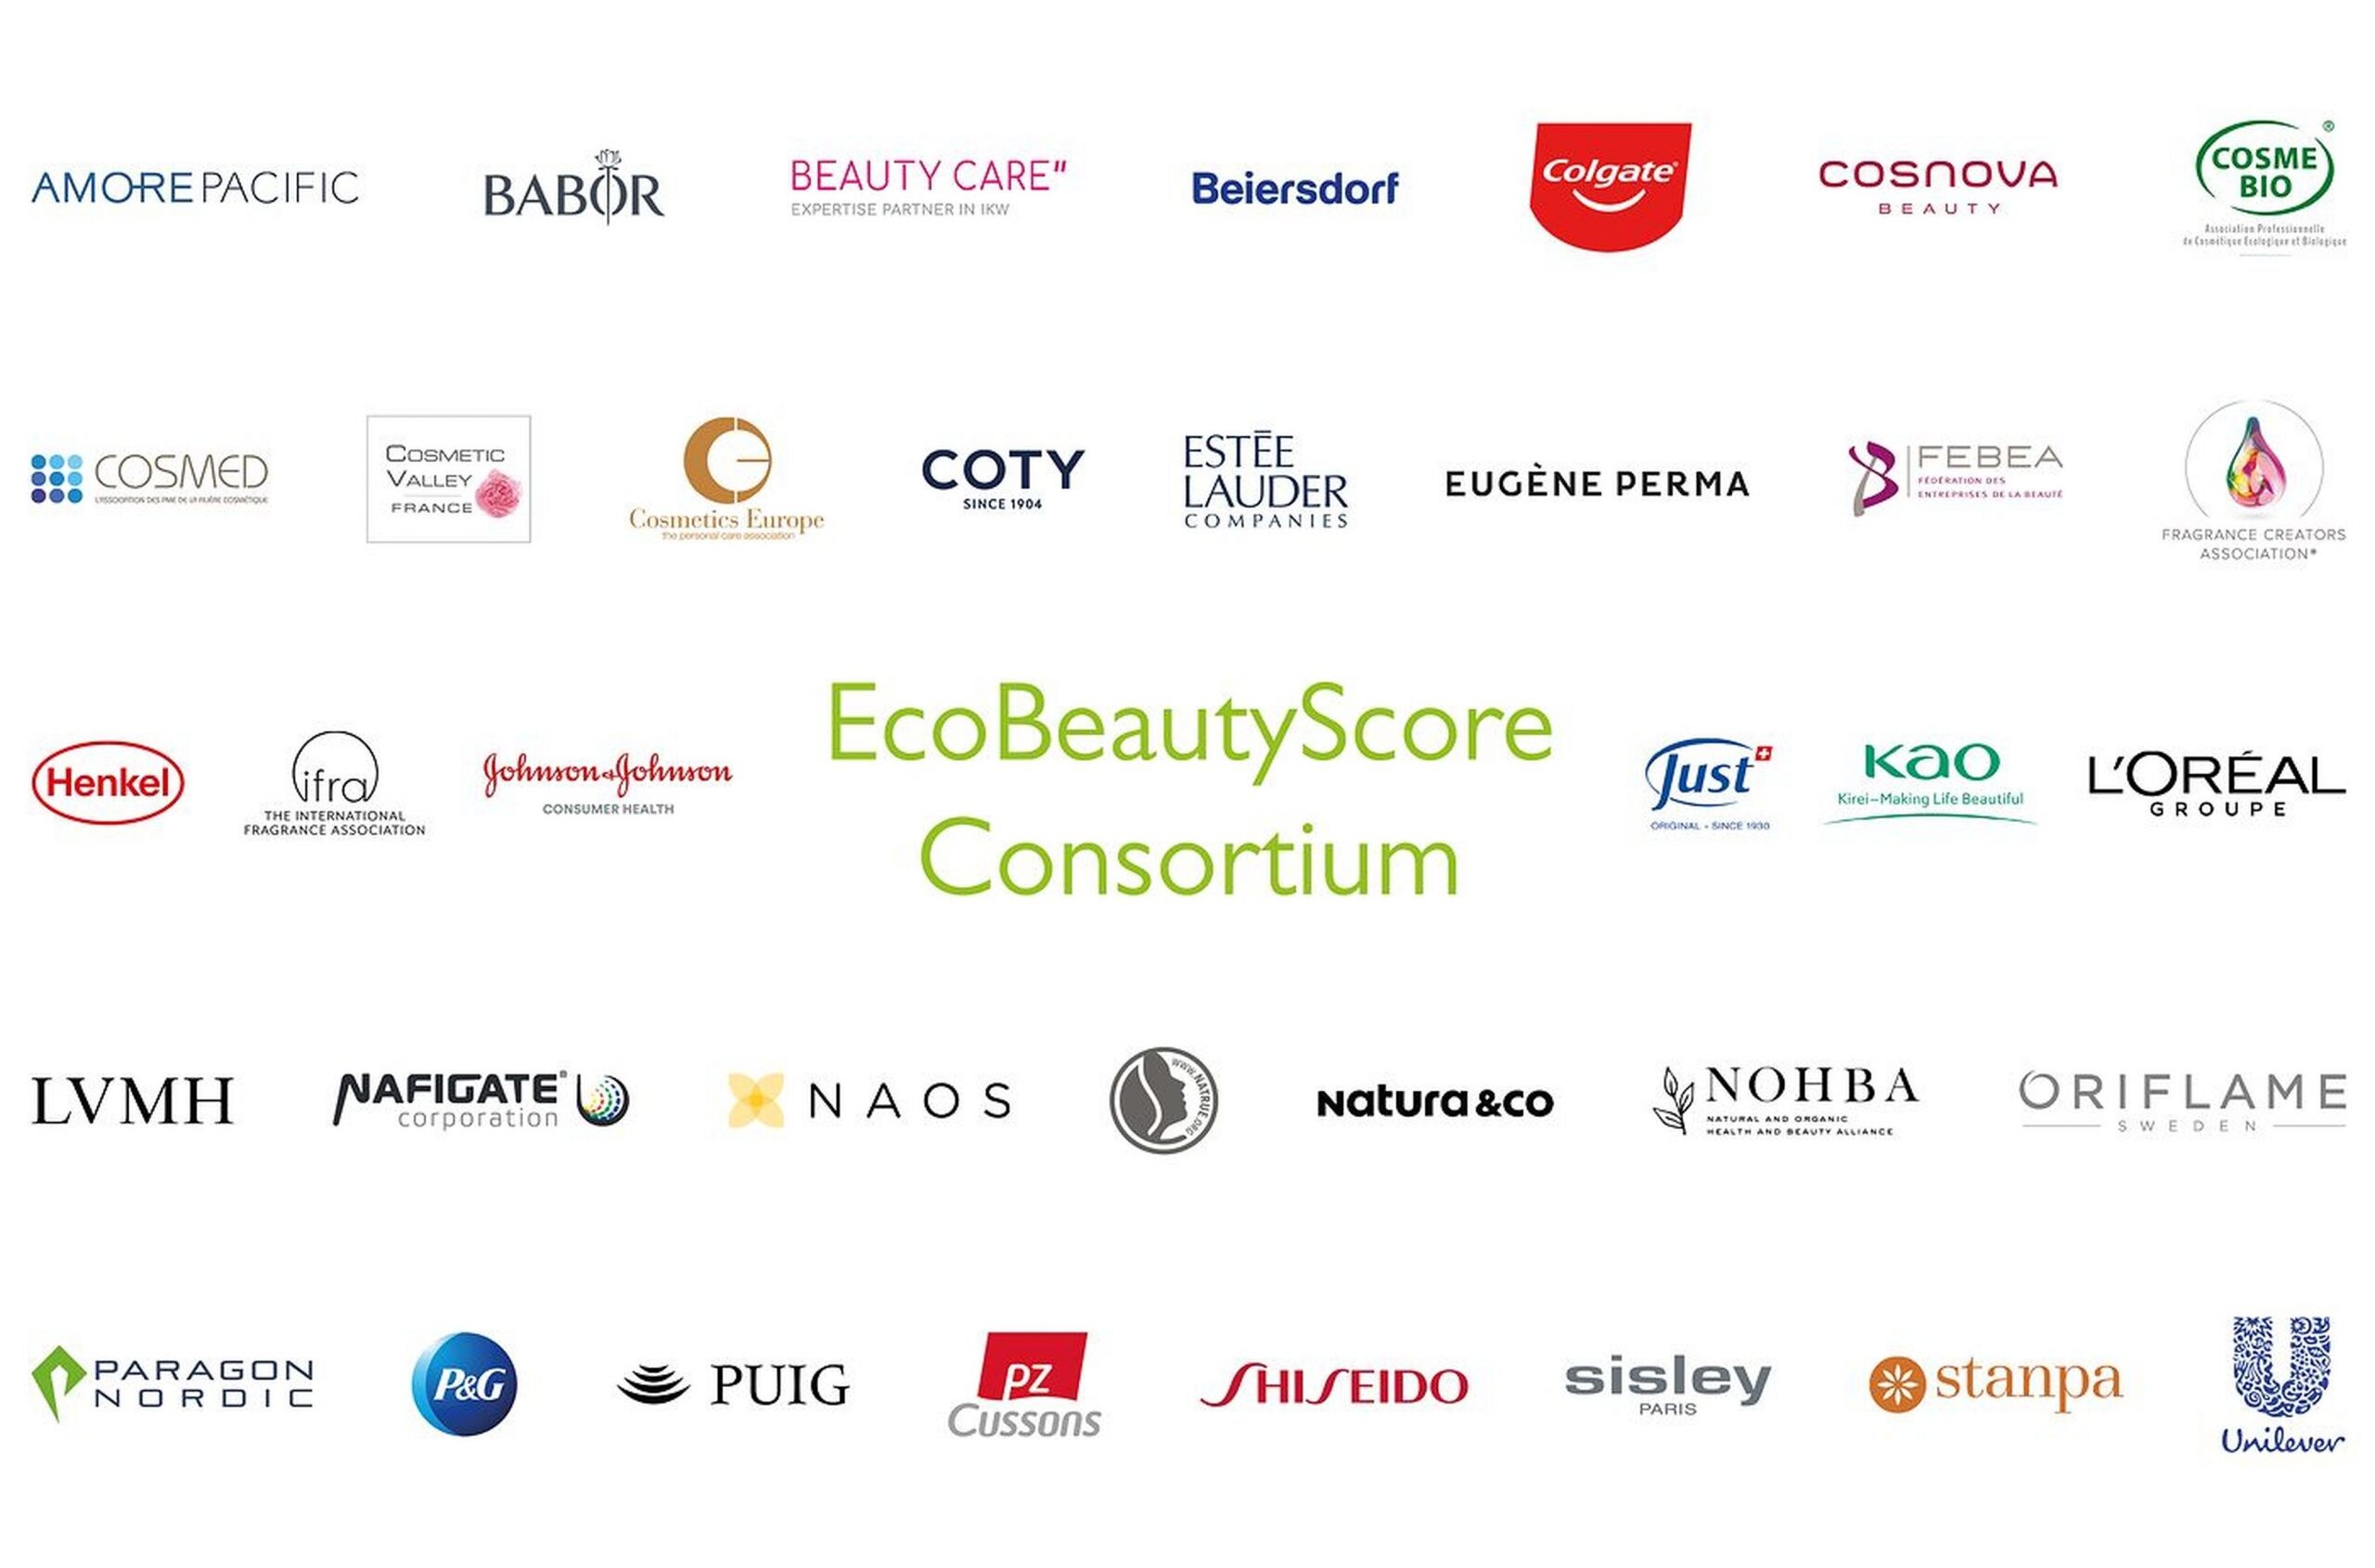 เฮงเค็ลและสมาชิกของสมาคม EcoBeautyScore Consortium มุ่งเพิ่มทางเลือกของผลิตภัณฑ์ที่ยั่งยืนให้กับผู้บริโภค